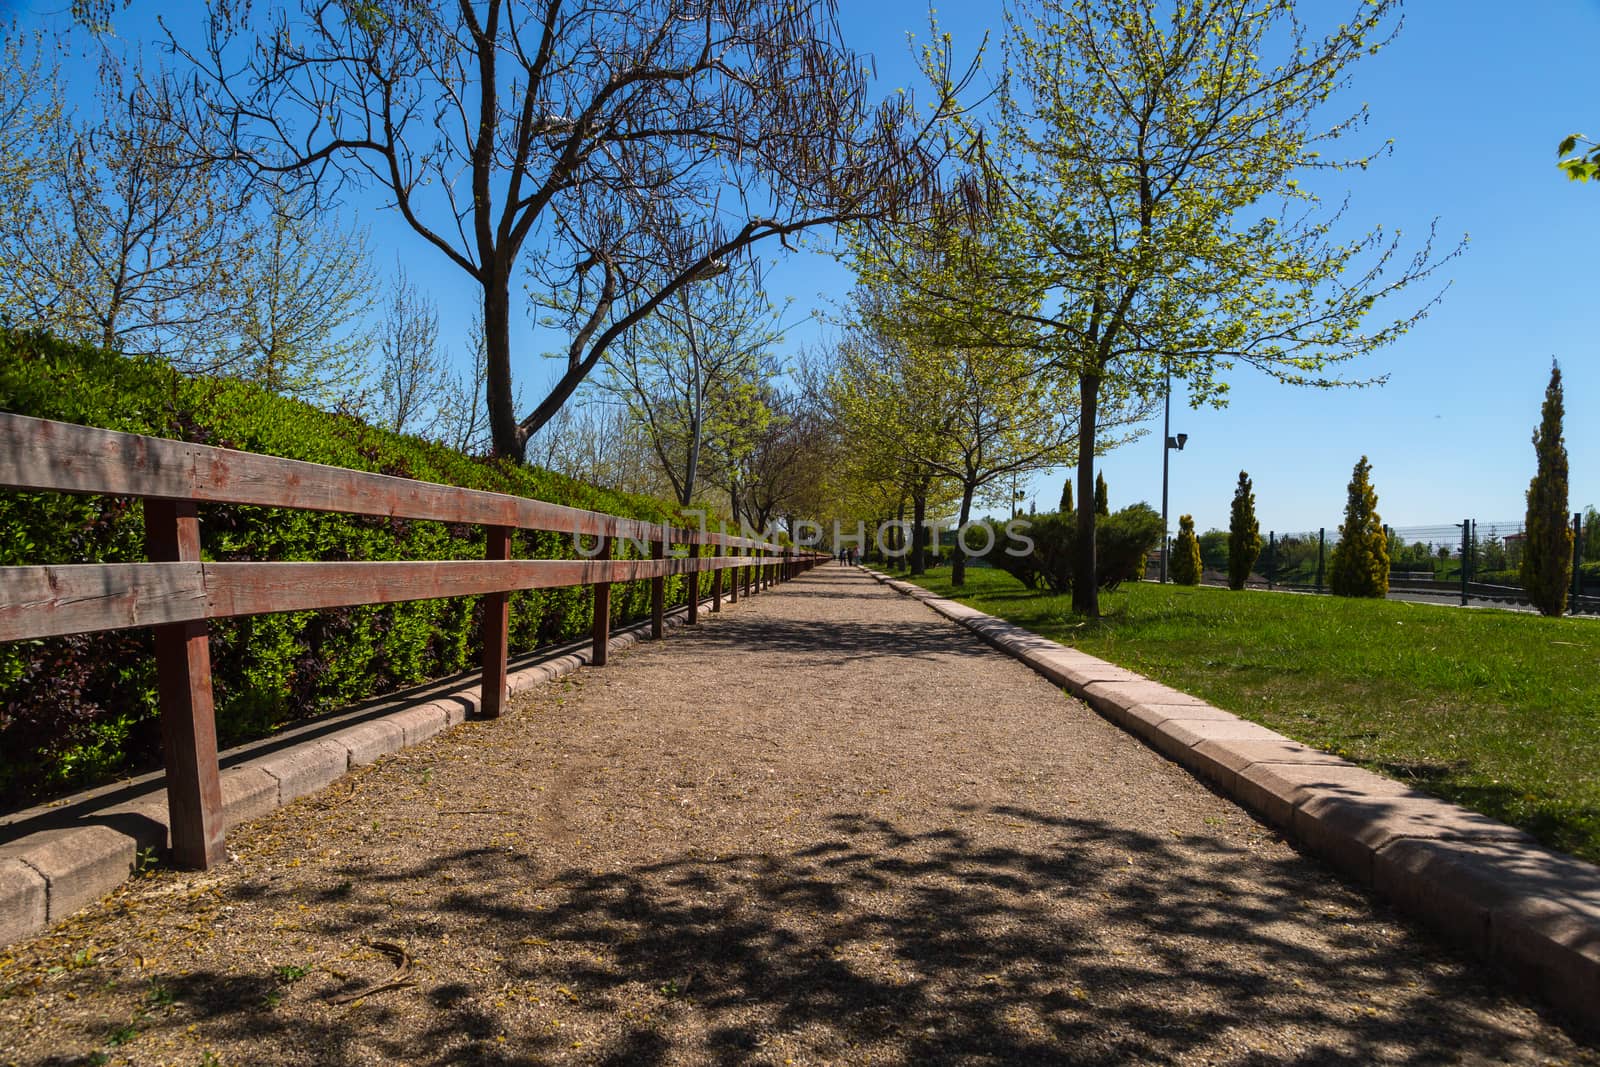 Pathway in Park by niglaynike